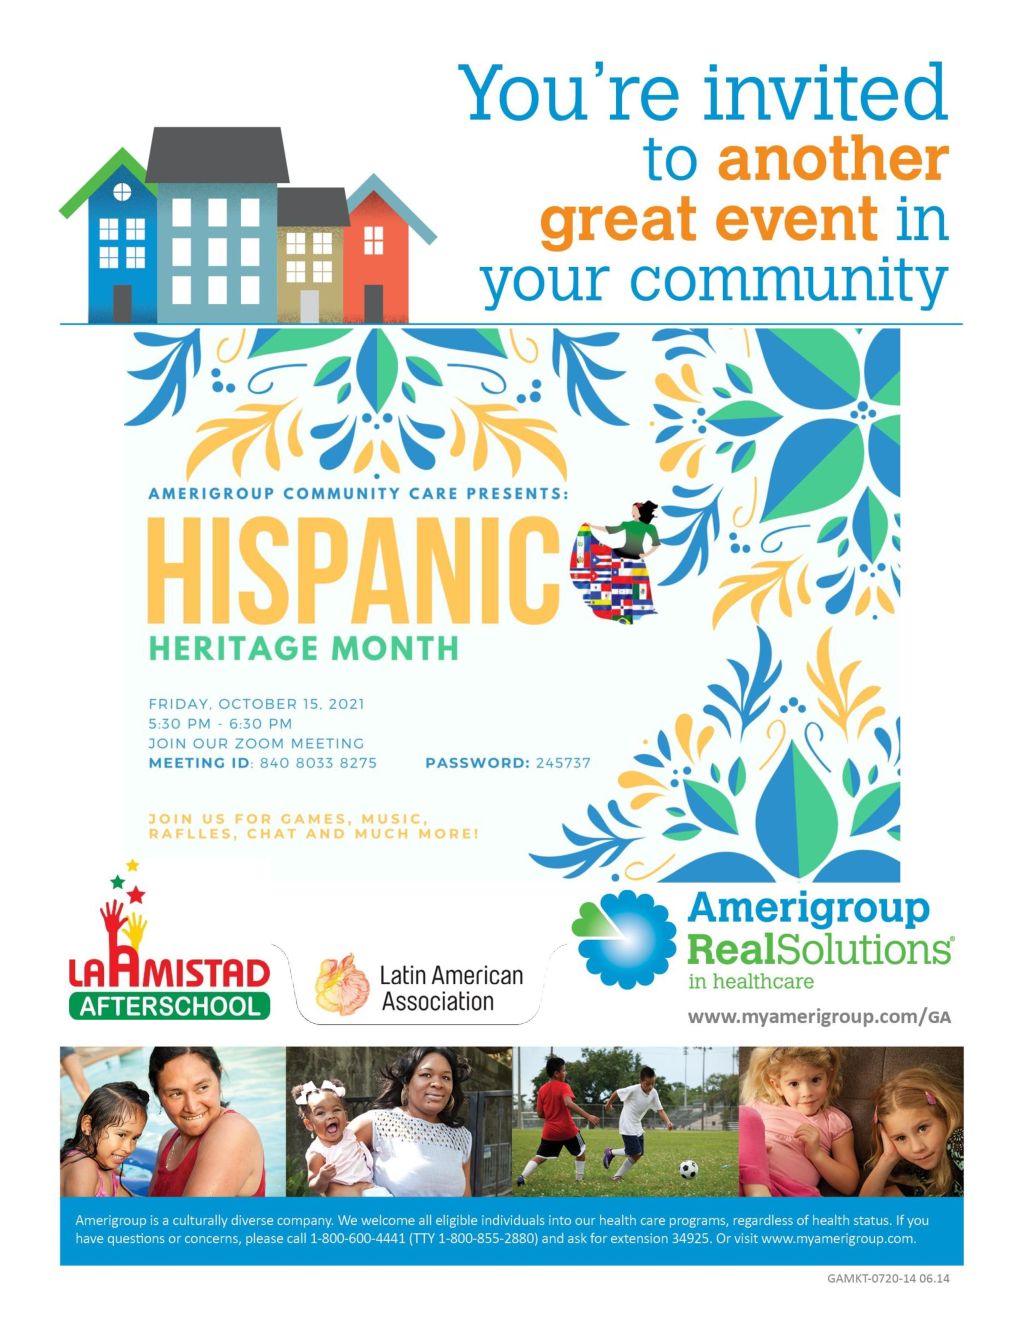 Amerigroup Hispanic Heritage Month